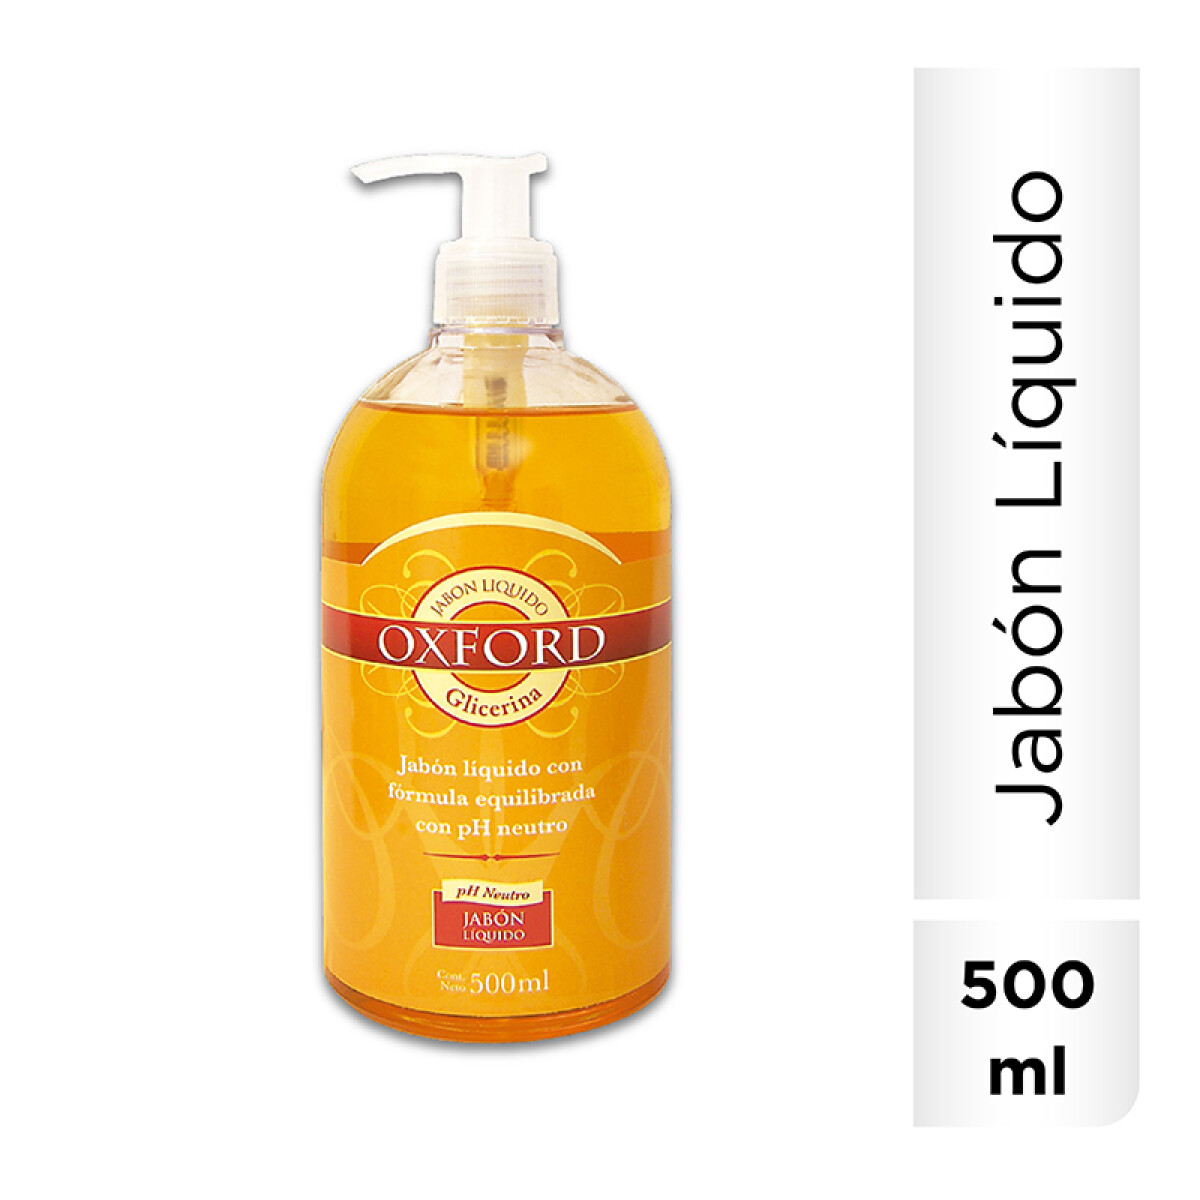 Oxford jabón líquido 500 ml - -Glicerina 